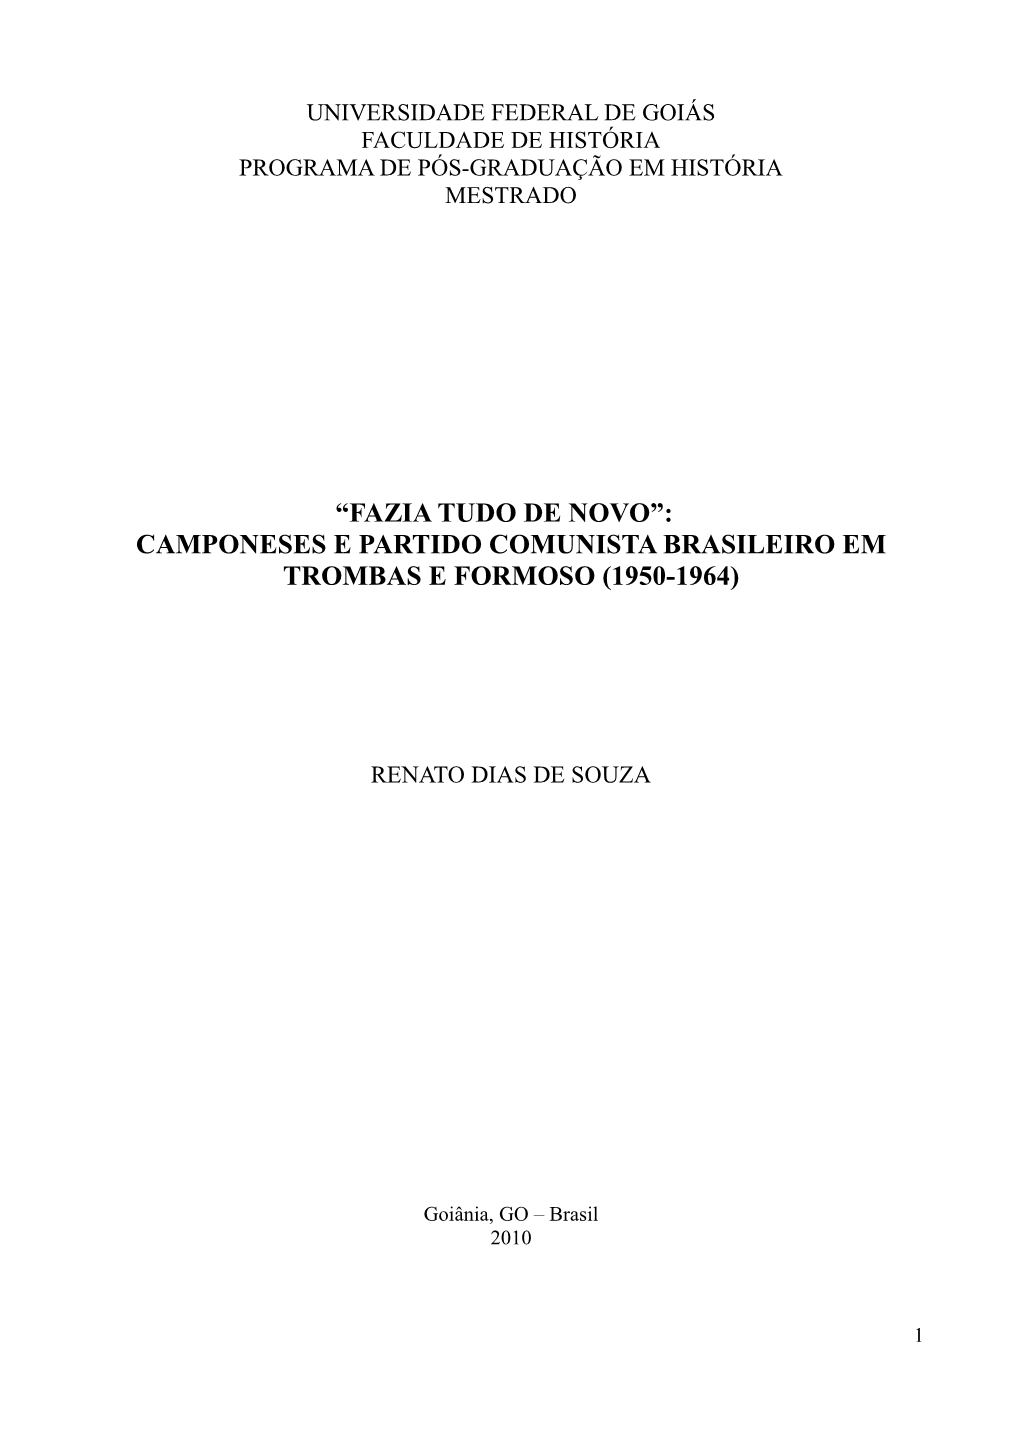 Camponeses E Partido Comunista Brasileiro Em Trombas E Formoso (1950-1964)